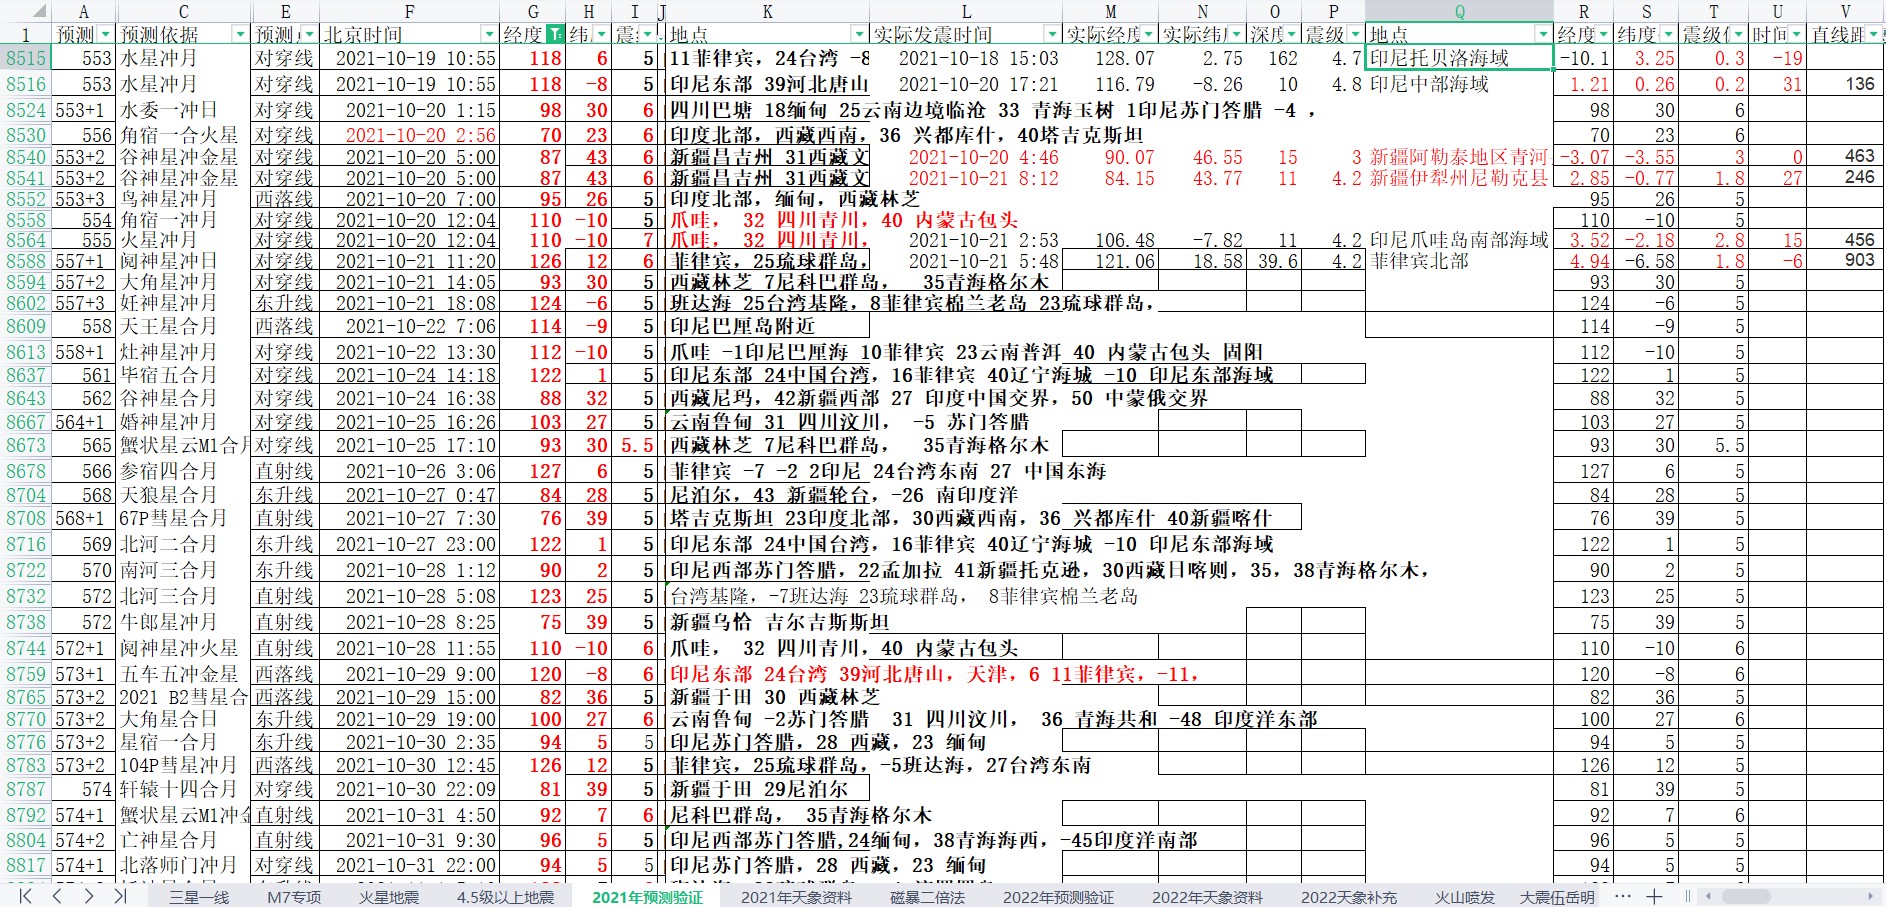 中国及周边区域地震预测验证2021年10月22-31日1.jpg